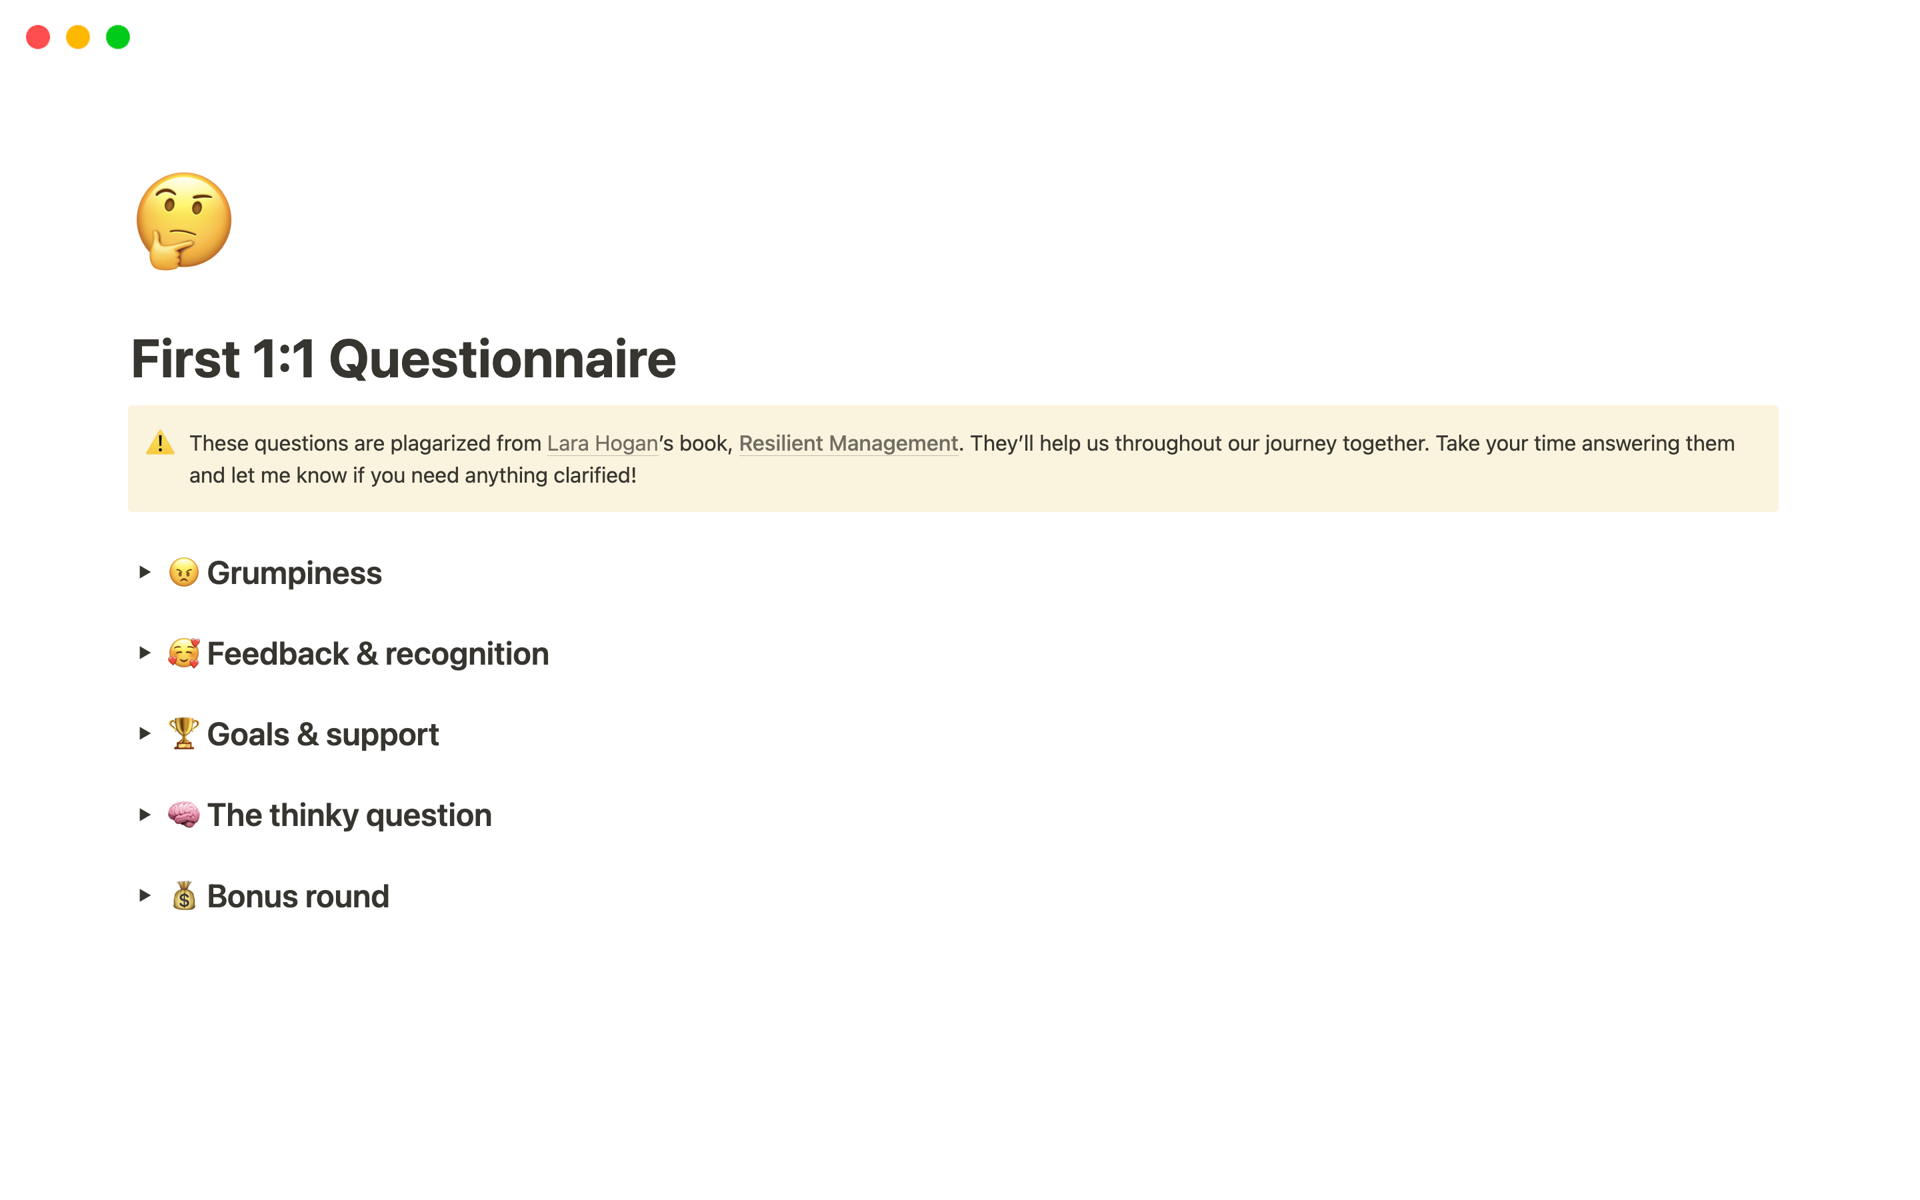 Vista previa de una plantilla para First 1:1 Questionnaire